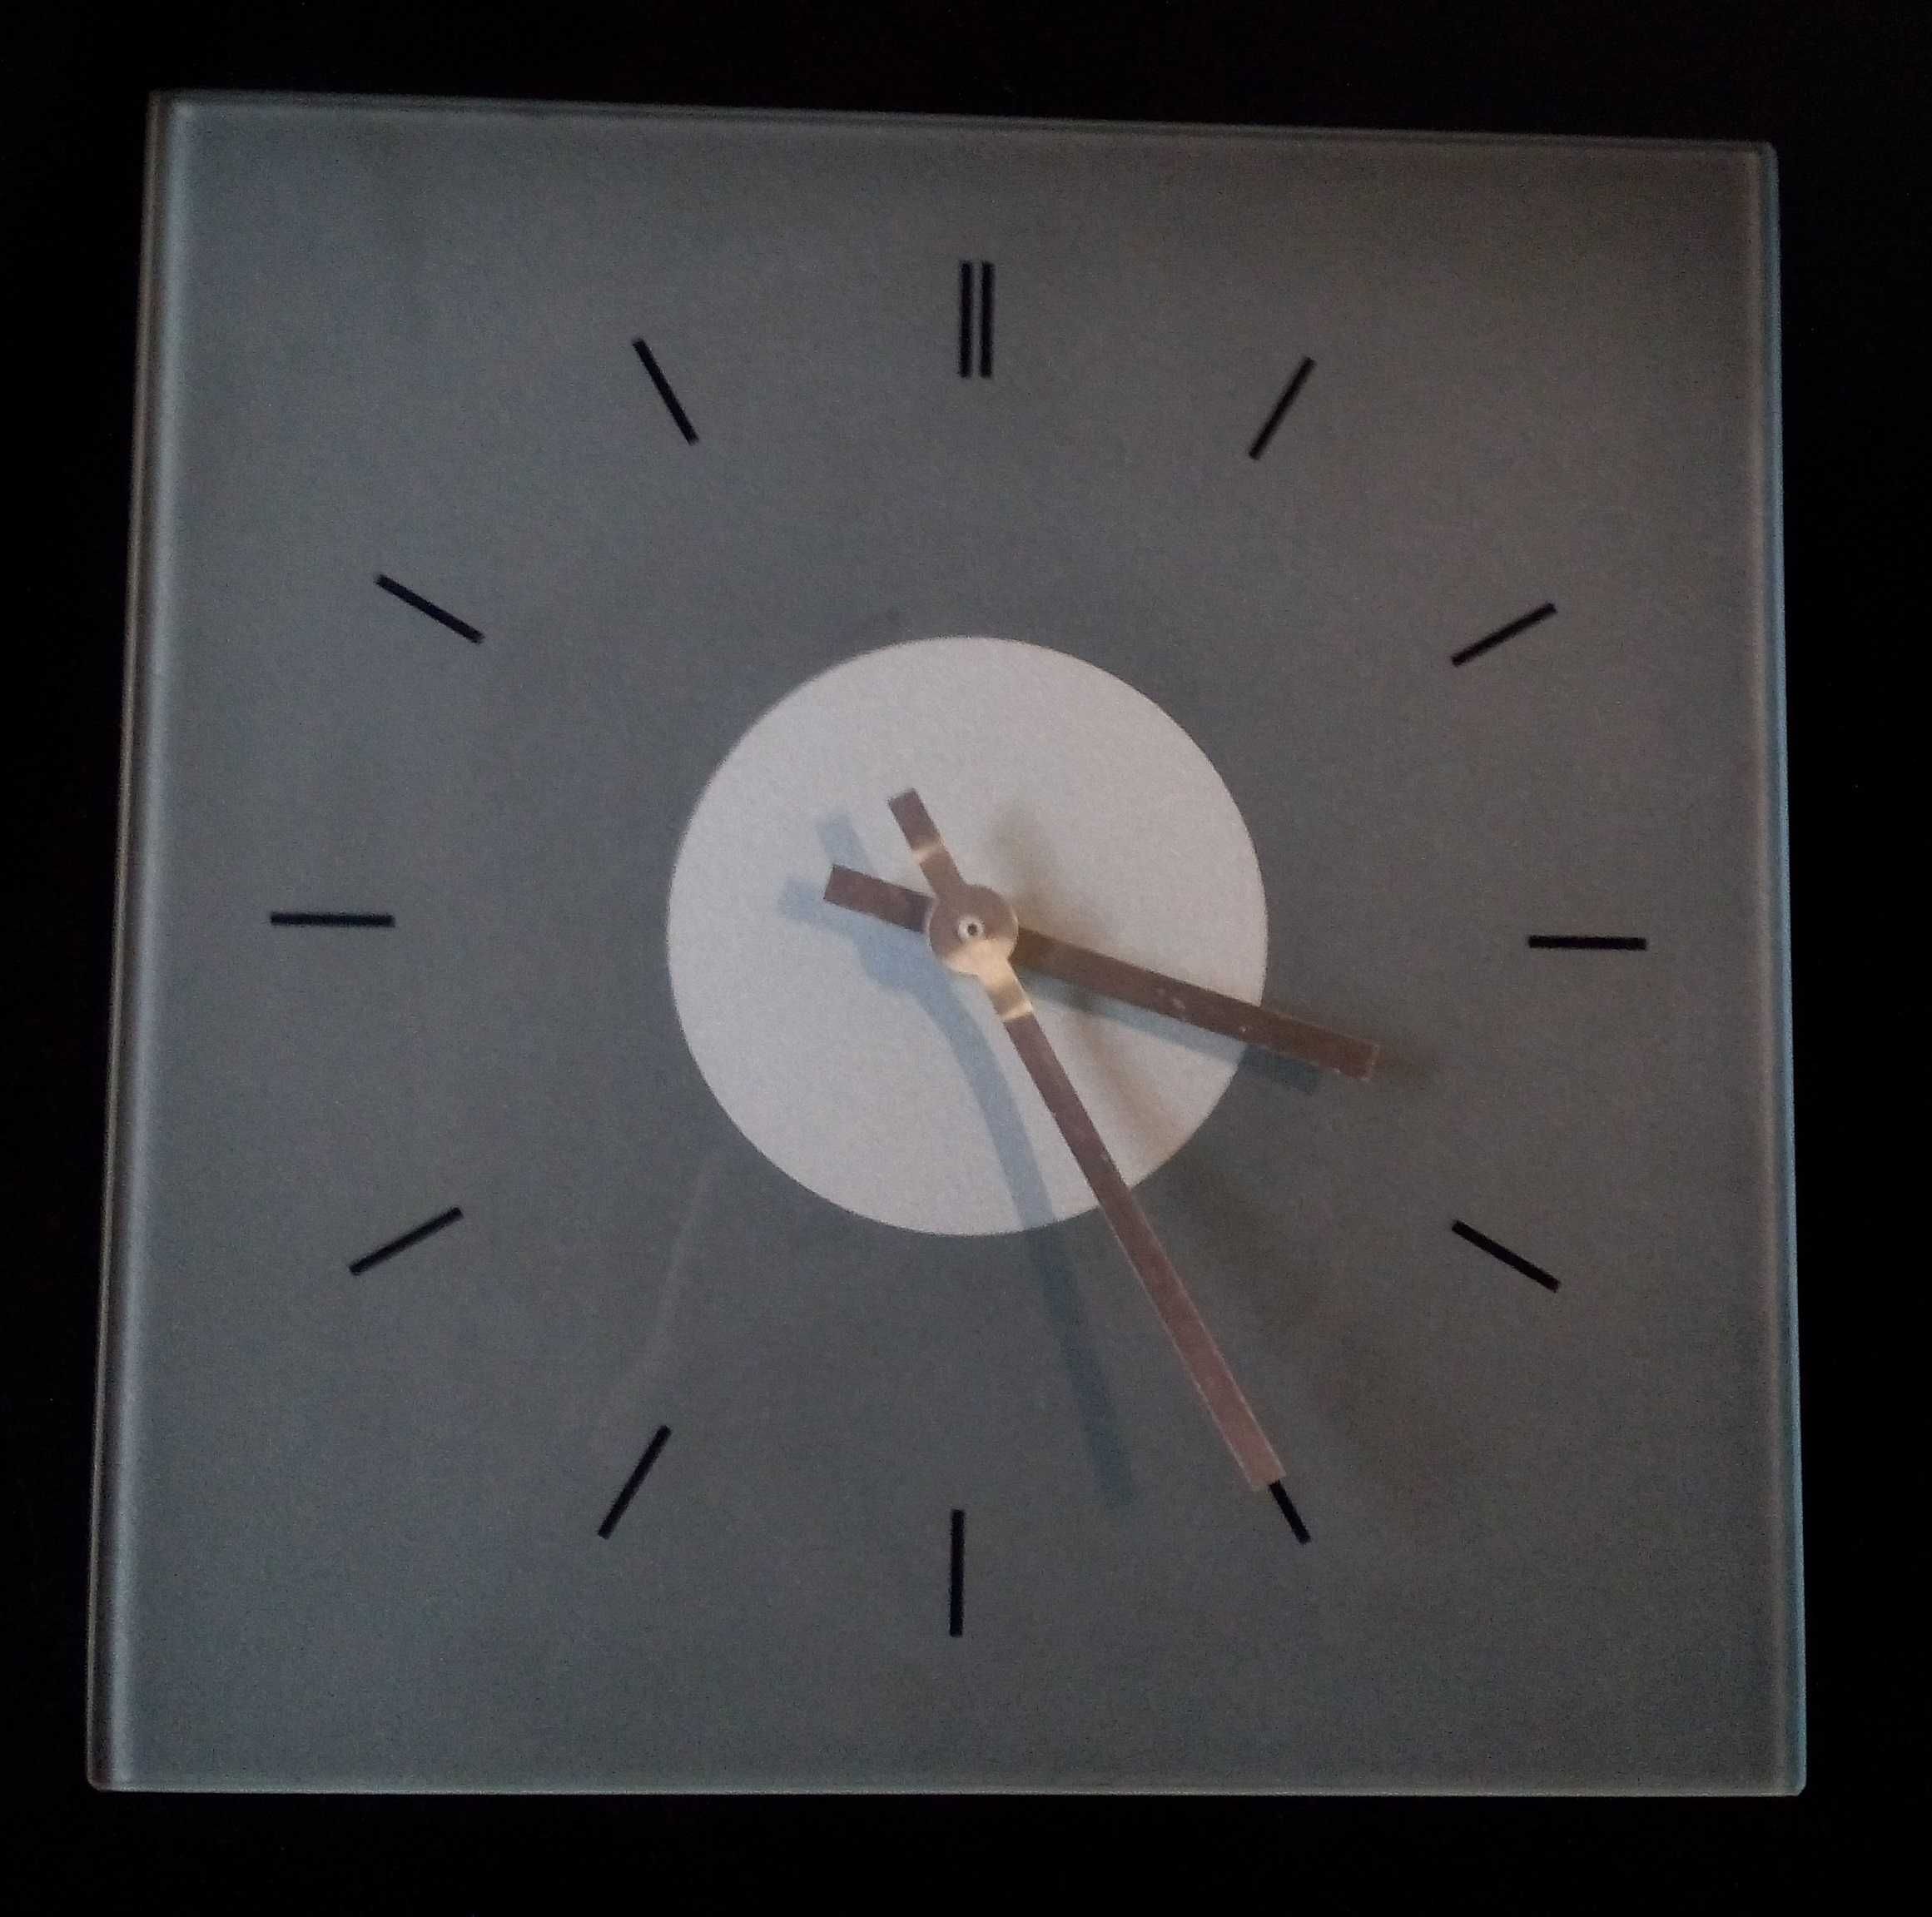 Relógio de parede quadrado, minimalista, em vidro fosco temperado